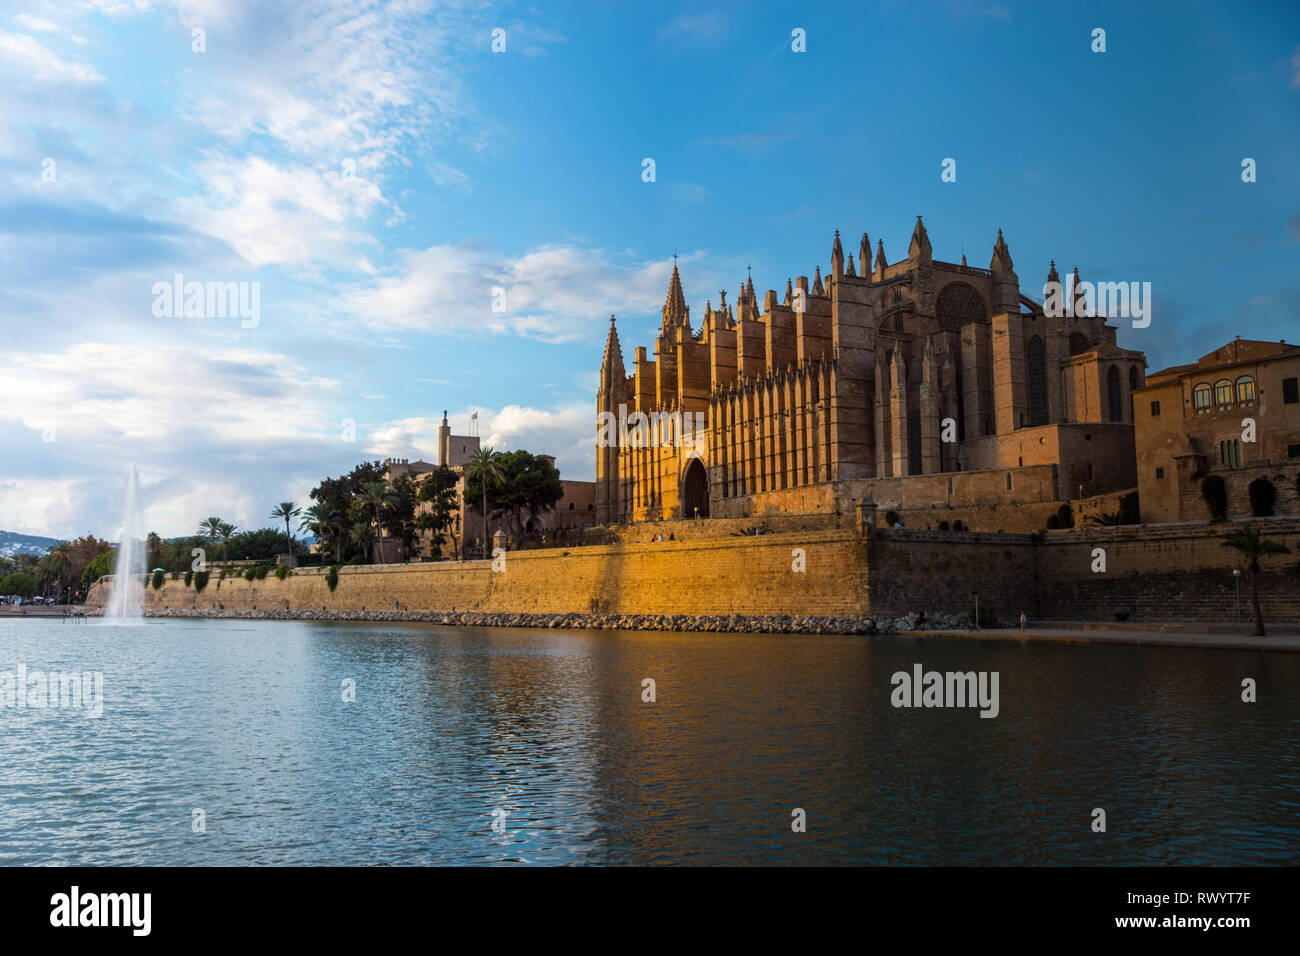 Transition jour/nuit sur la cathédrale de Palma de Majorque - Espagne Banque D'Images